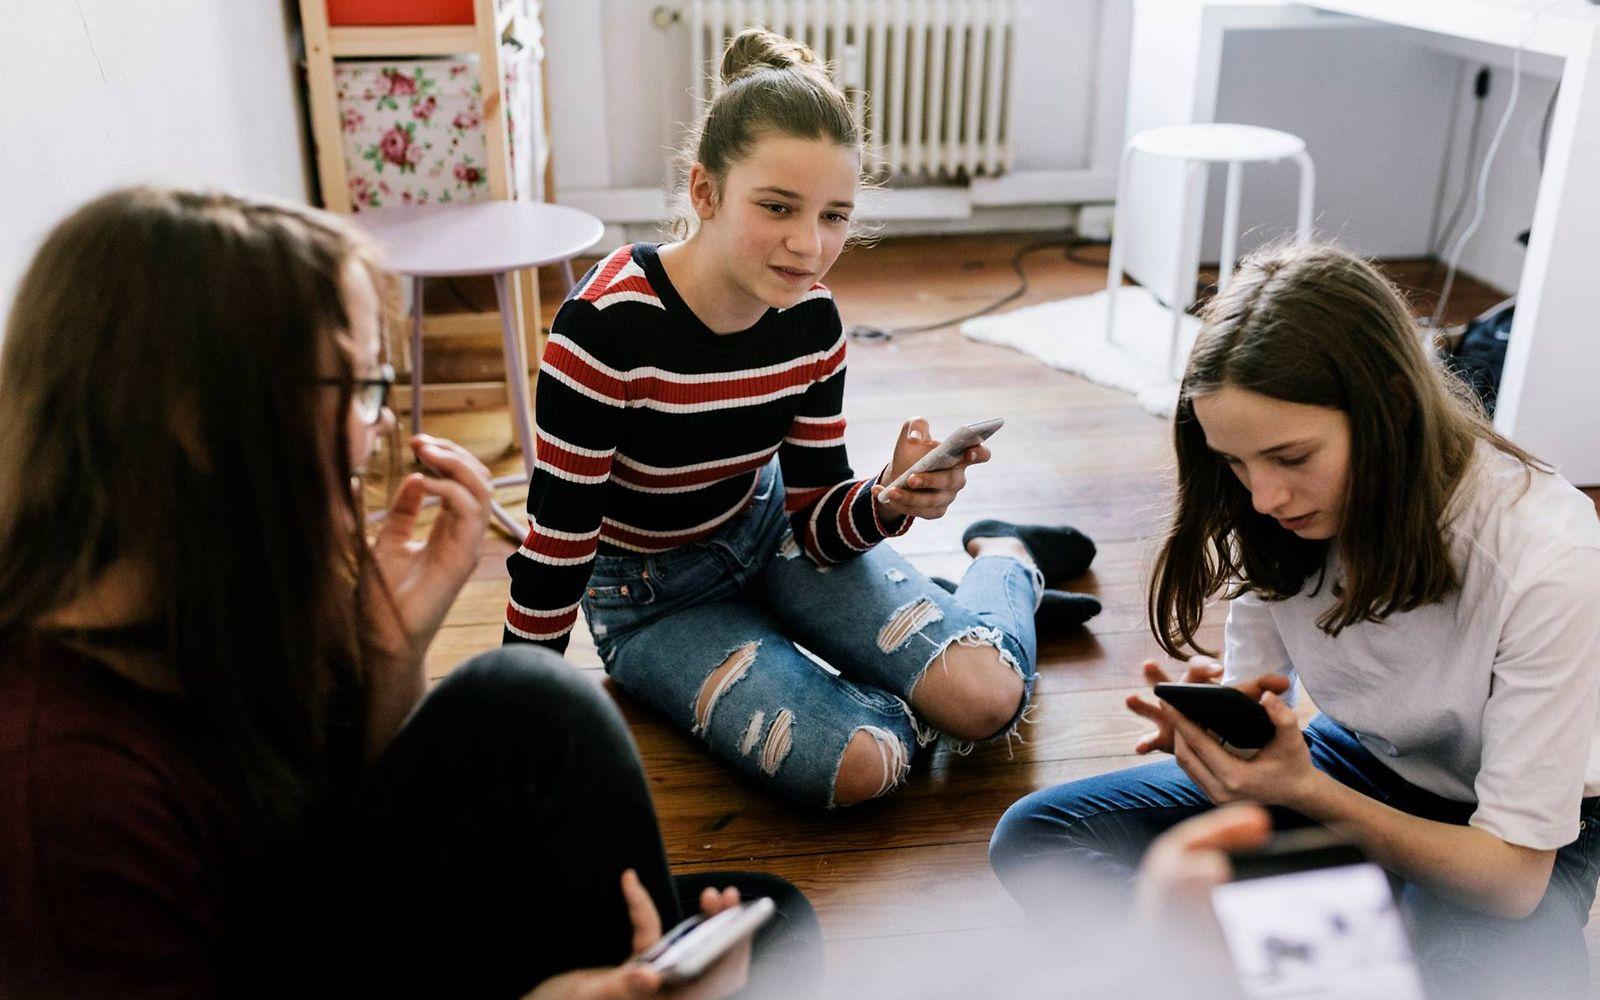 Medienkonsum bei Kindern: Mädchen sitzen mit Smartphones im Schlafzimmer